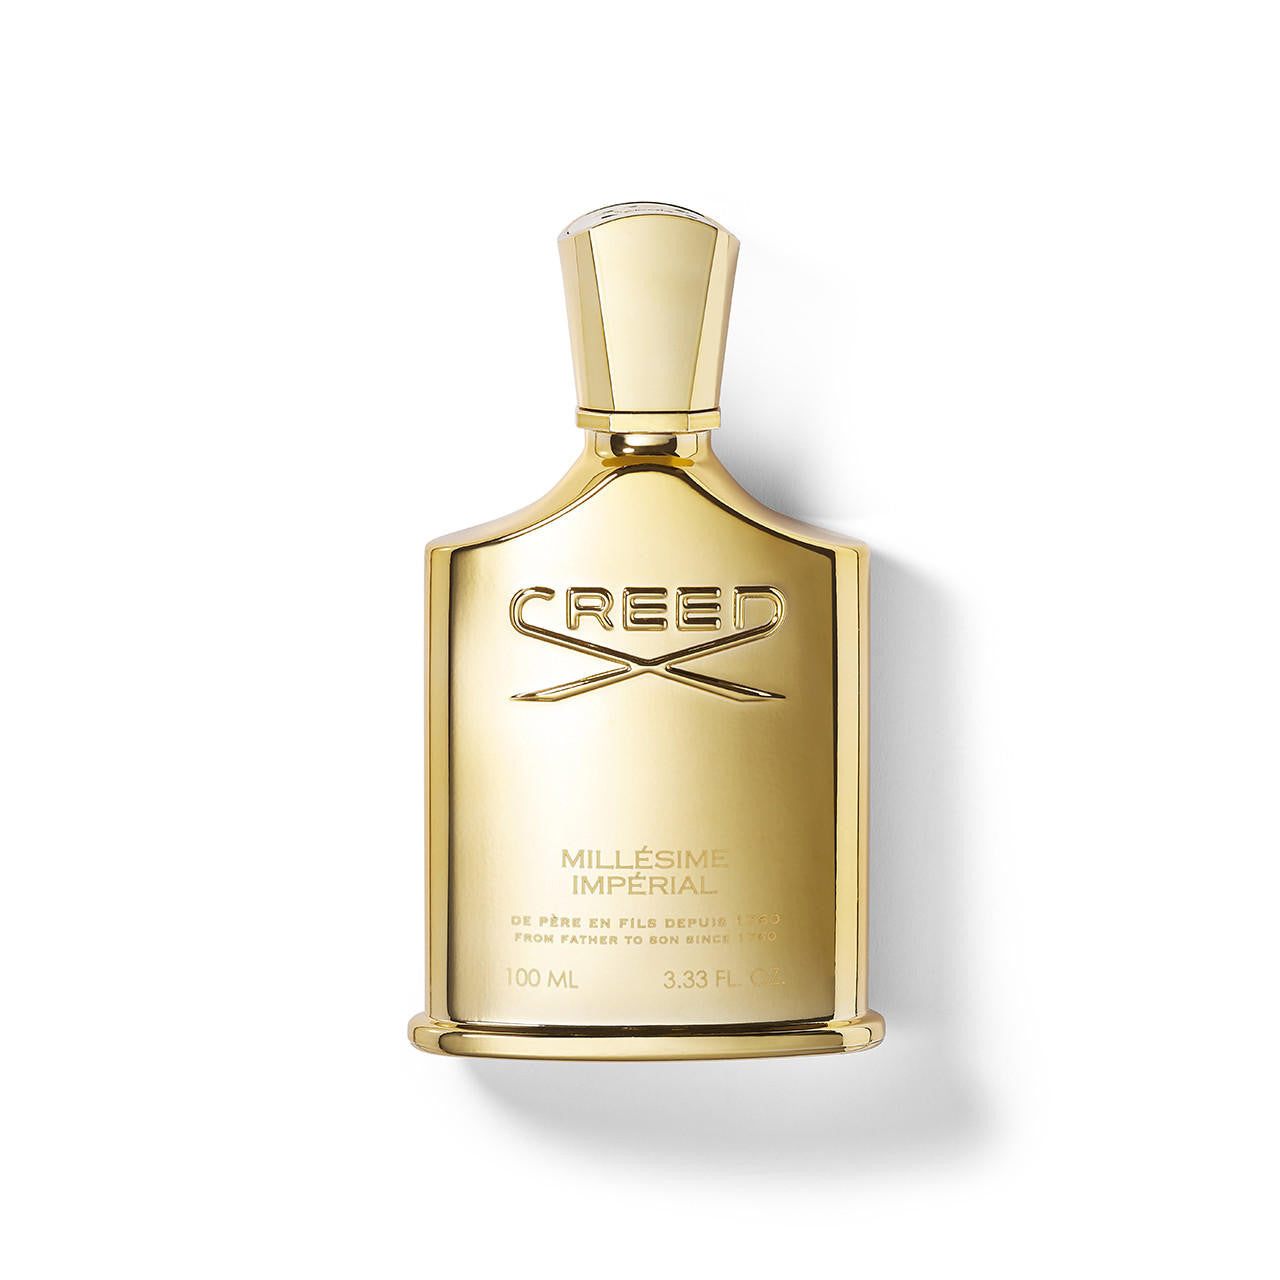  Creed Millésime Impérial Eau de Parfum 